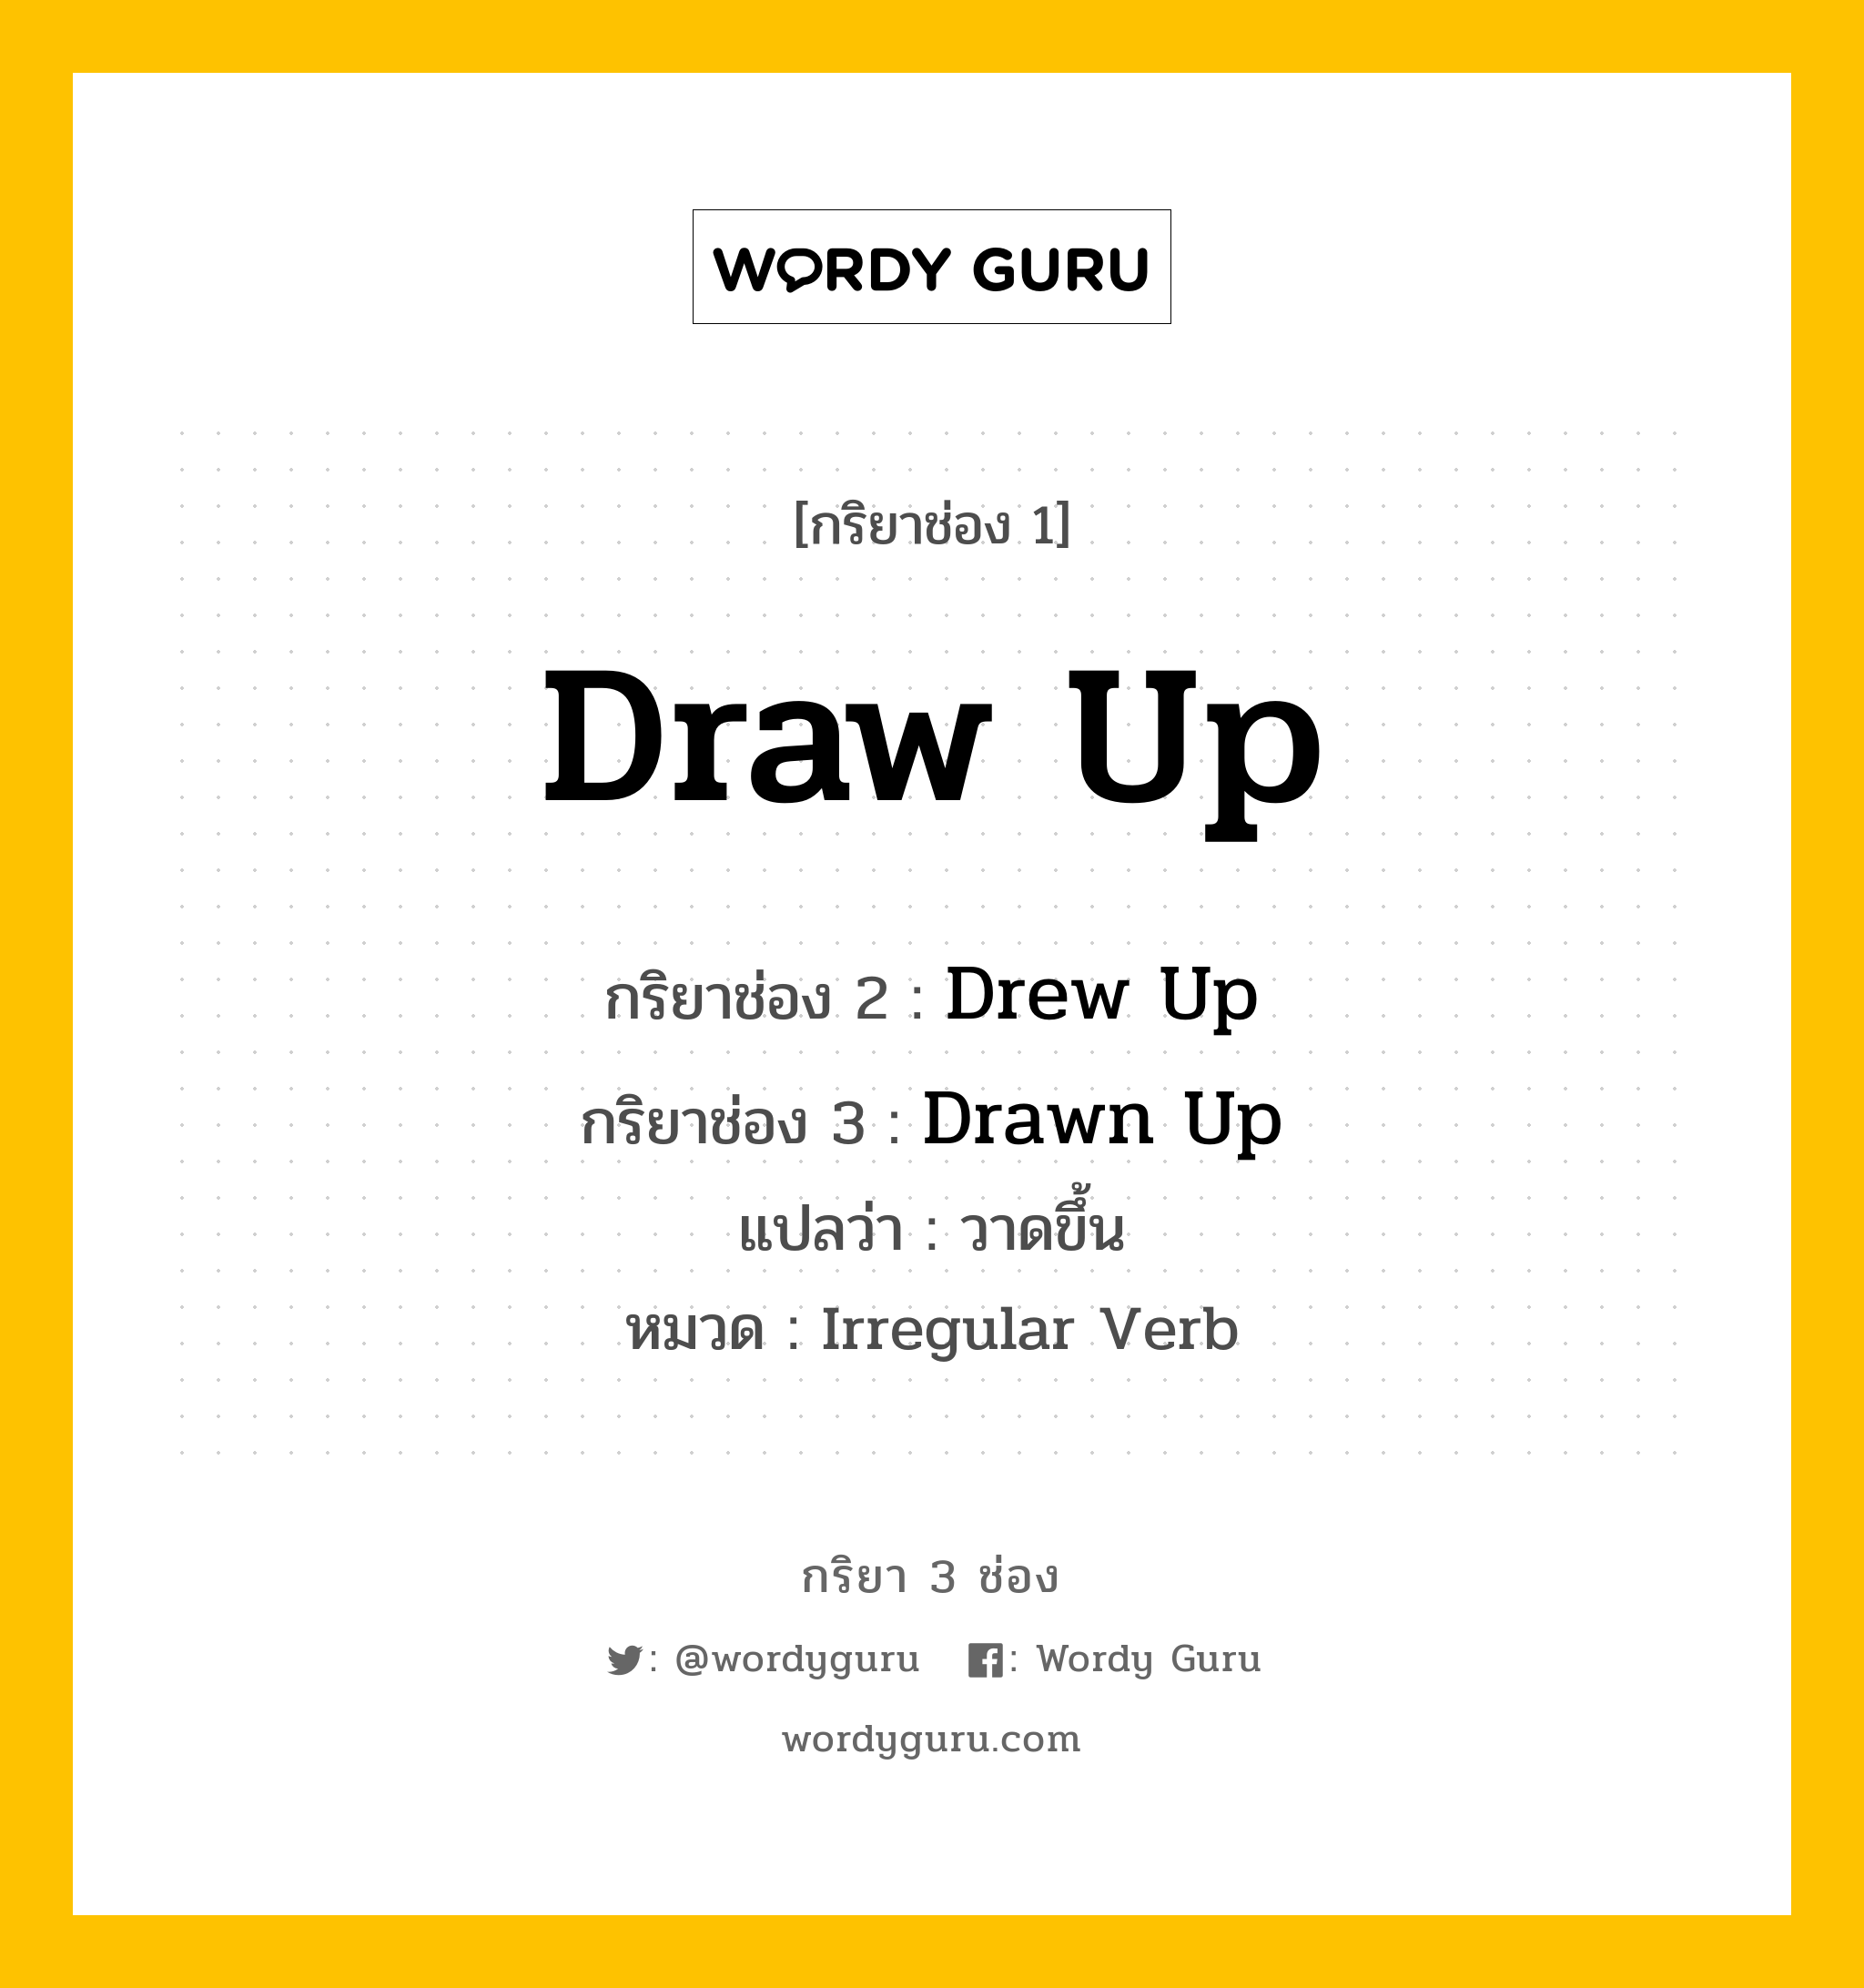 Draw Up มีกริยา 3 ช่องอะไรบ้าง? คำศัพท์ในกลุ่มประเภท Irregular Verb, กริยาช่อง 1 Draw Up กริยาช่อง 2 Drew Up กริยาช่อง 3 Drawn Up แปลว่า วาดขึ้น หมวด Irregular Verb หมวด Irregular Verb